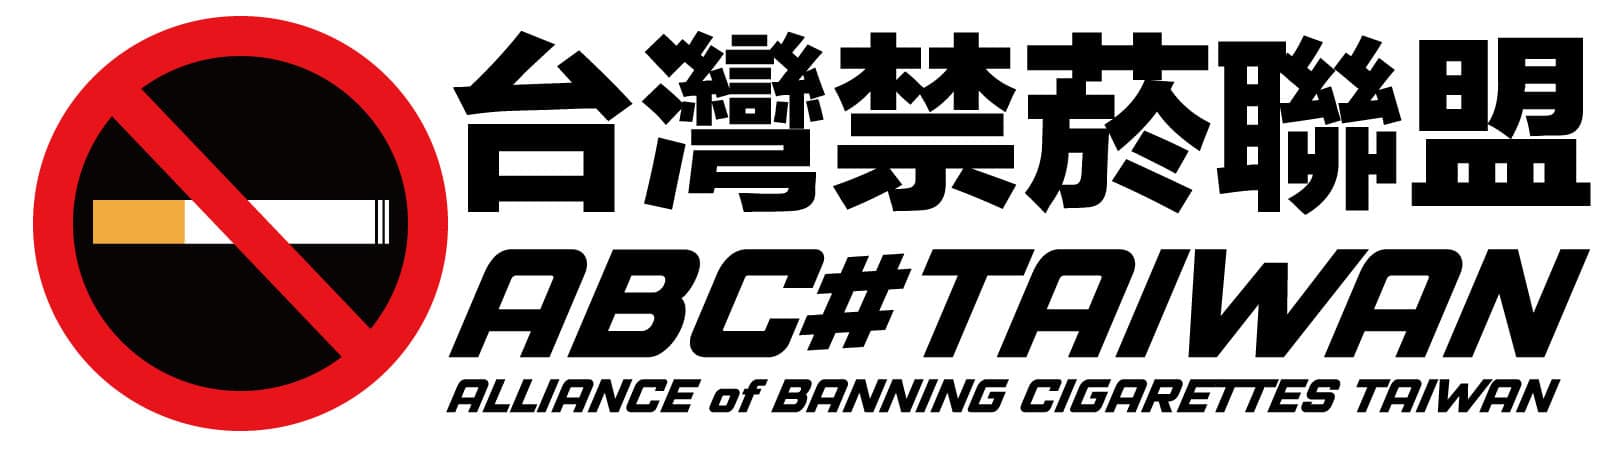 台灣禁菸聯盟(ABC#TAIWAN)